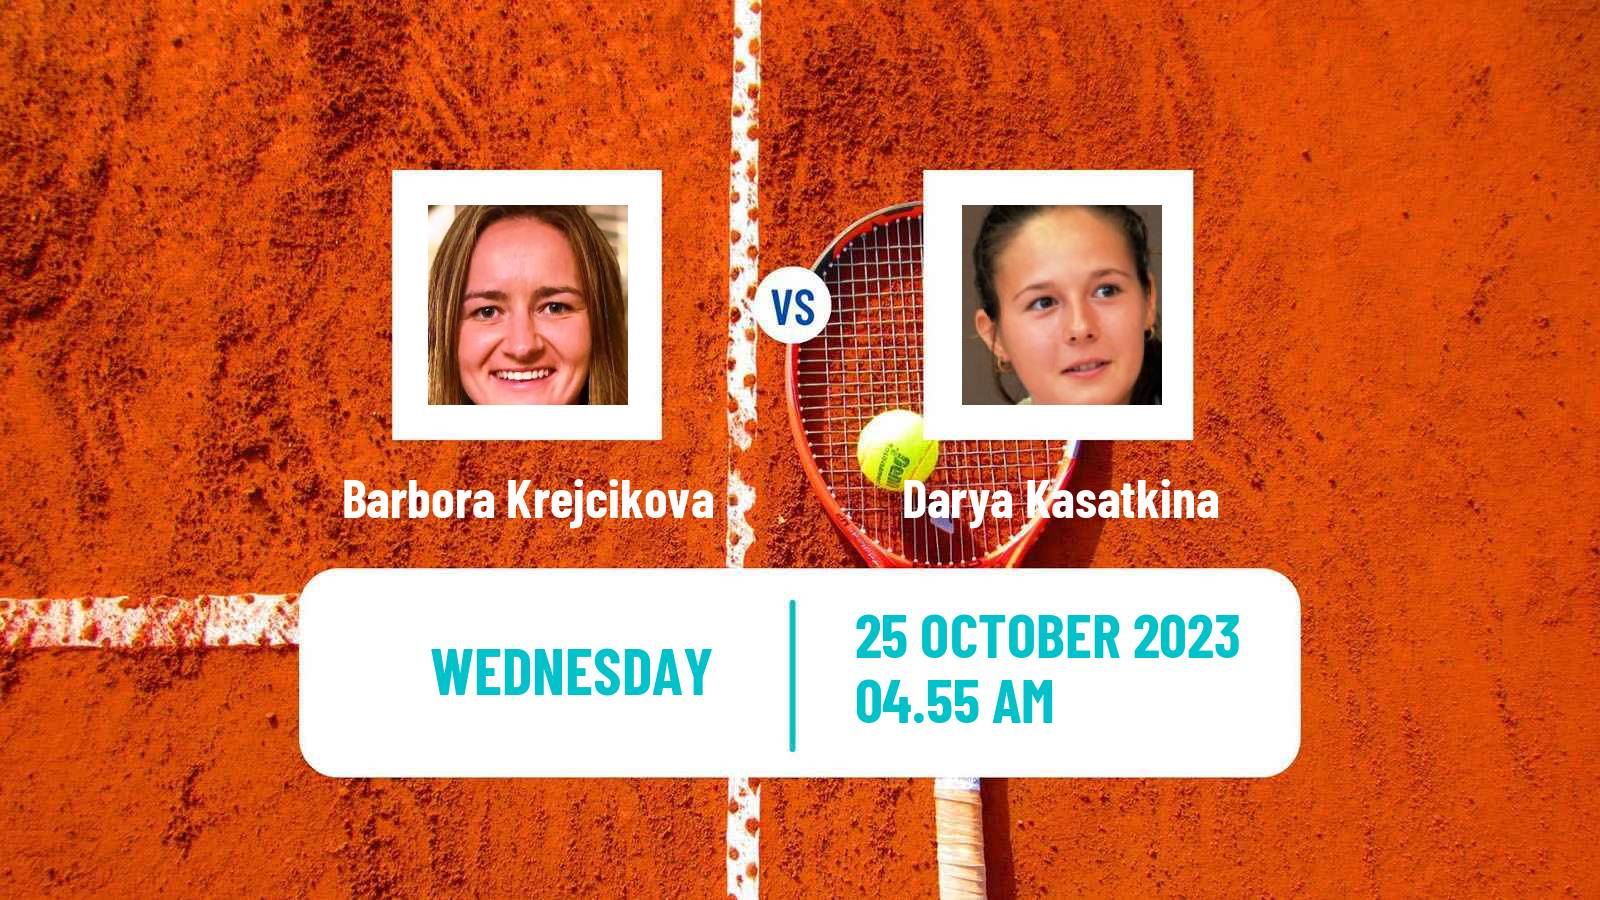 Tennis WTA Zhuhai Barbora Krejcikova - Darya Kasatkina